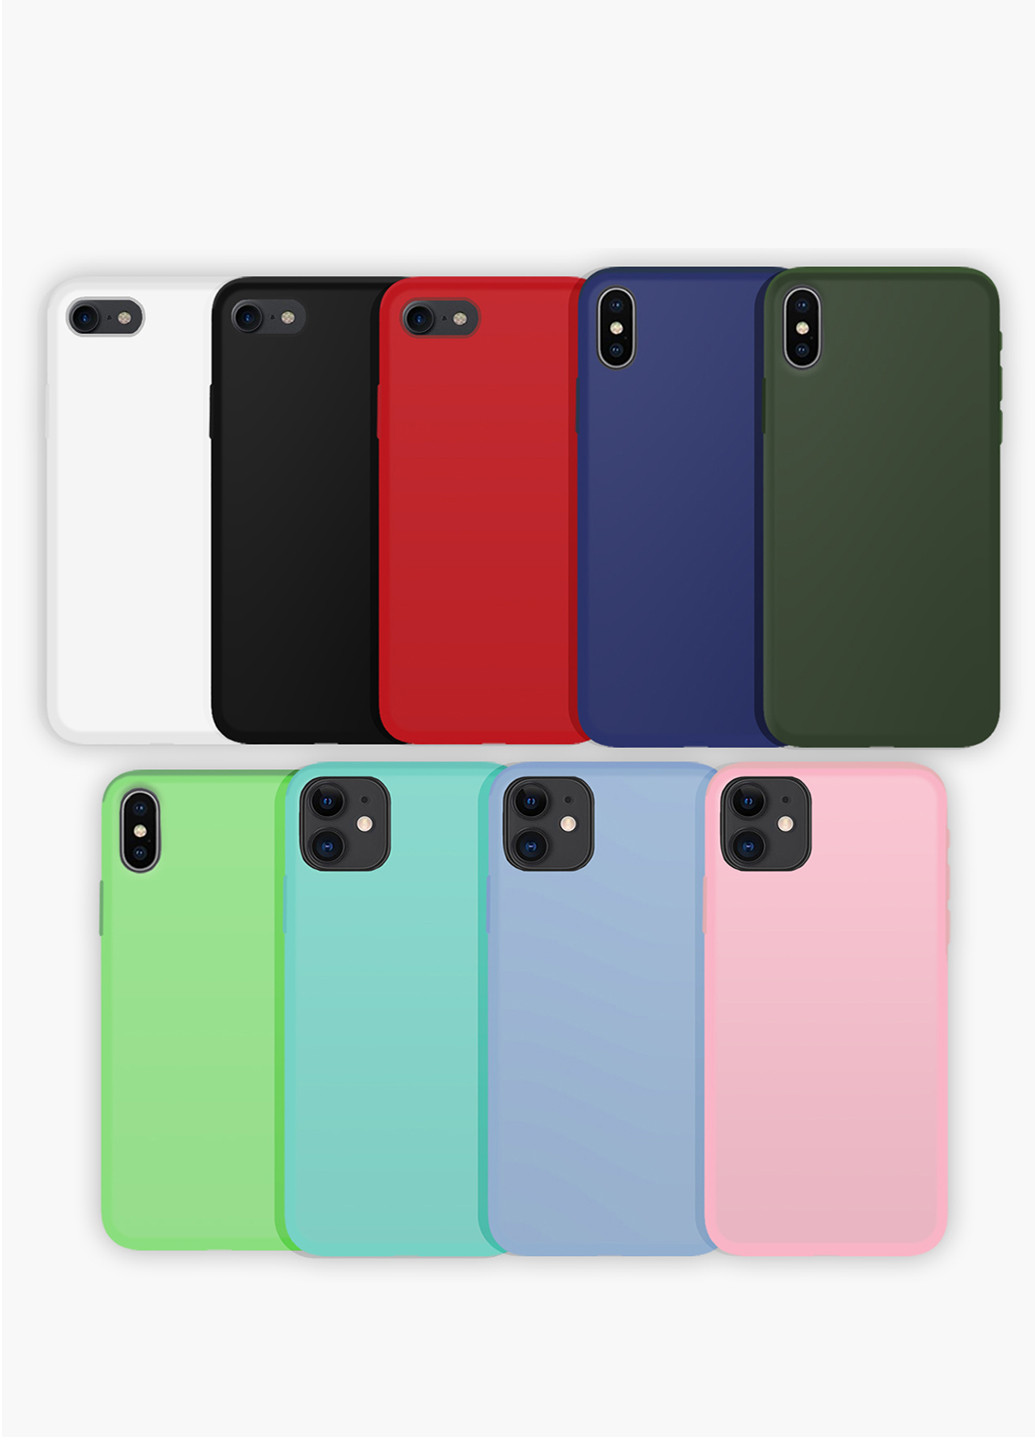 Чехол силиконовый Apple Iphone 6 Плейлист Обстановка по кайфу Олег Кензов (6937-1628) MobiPrint (219778017)